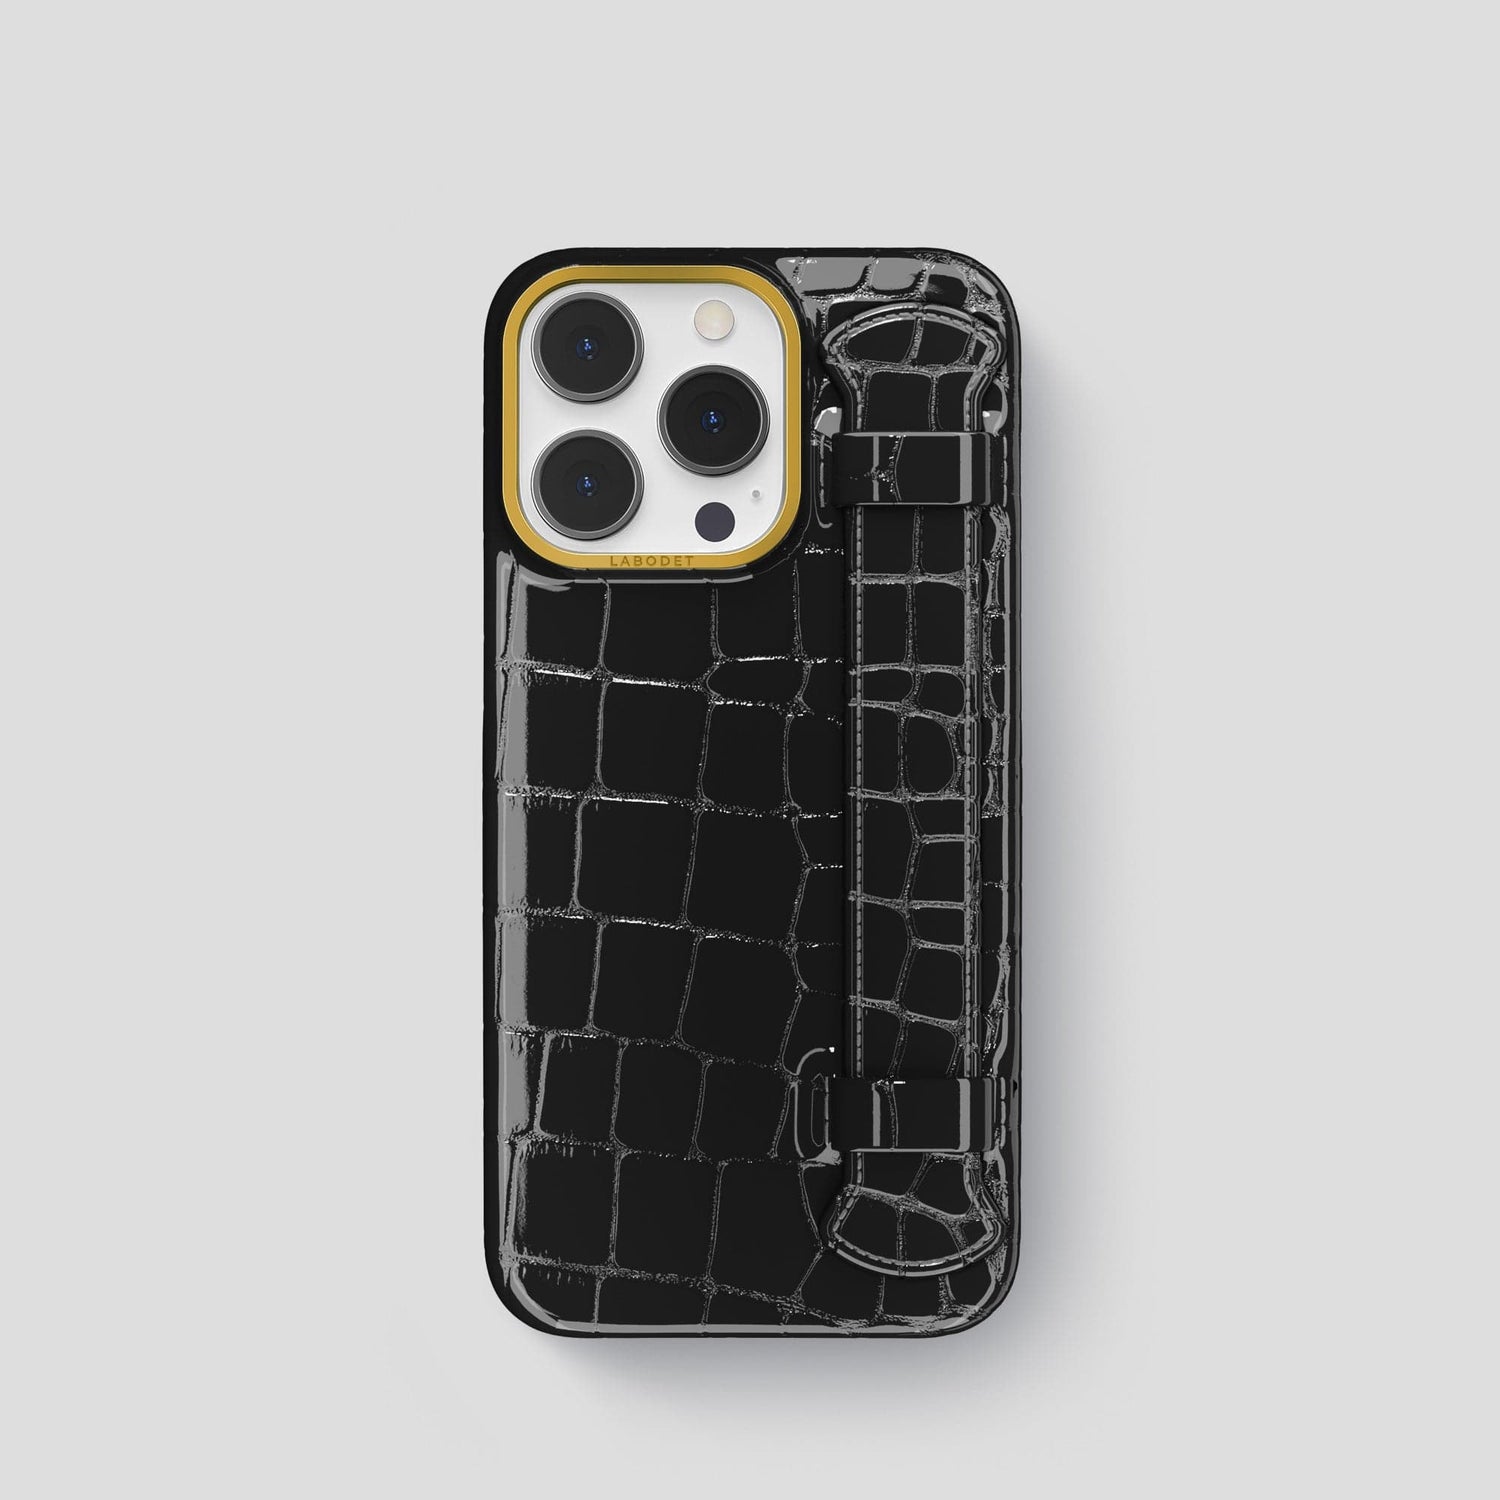 iPhone 12 Pro Max Case in Black Croc